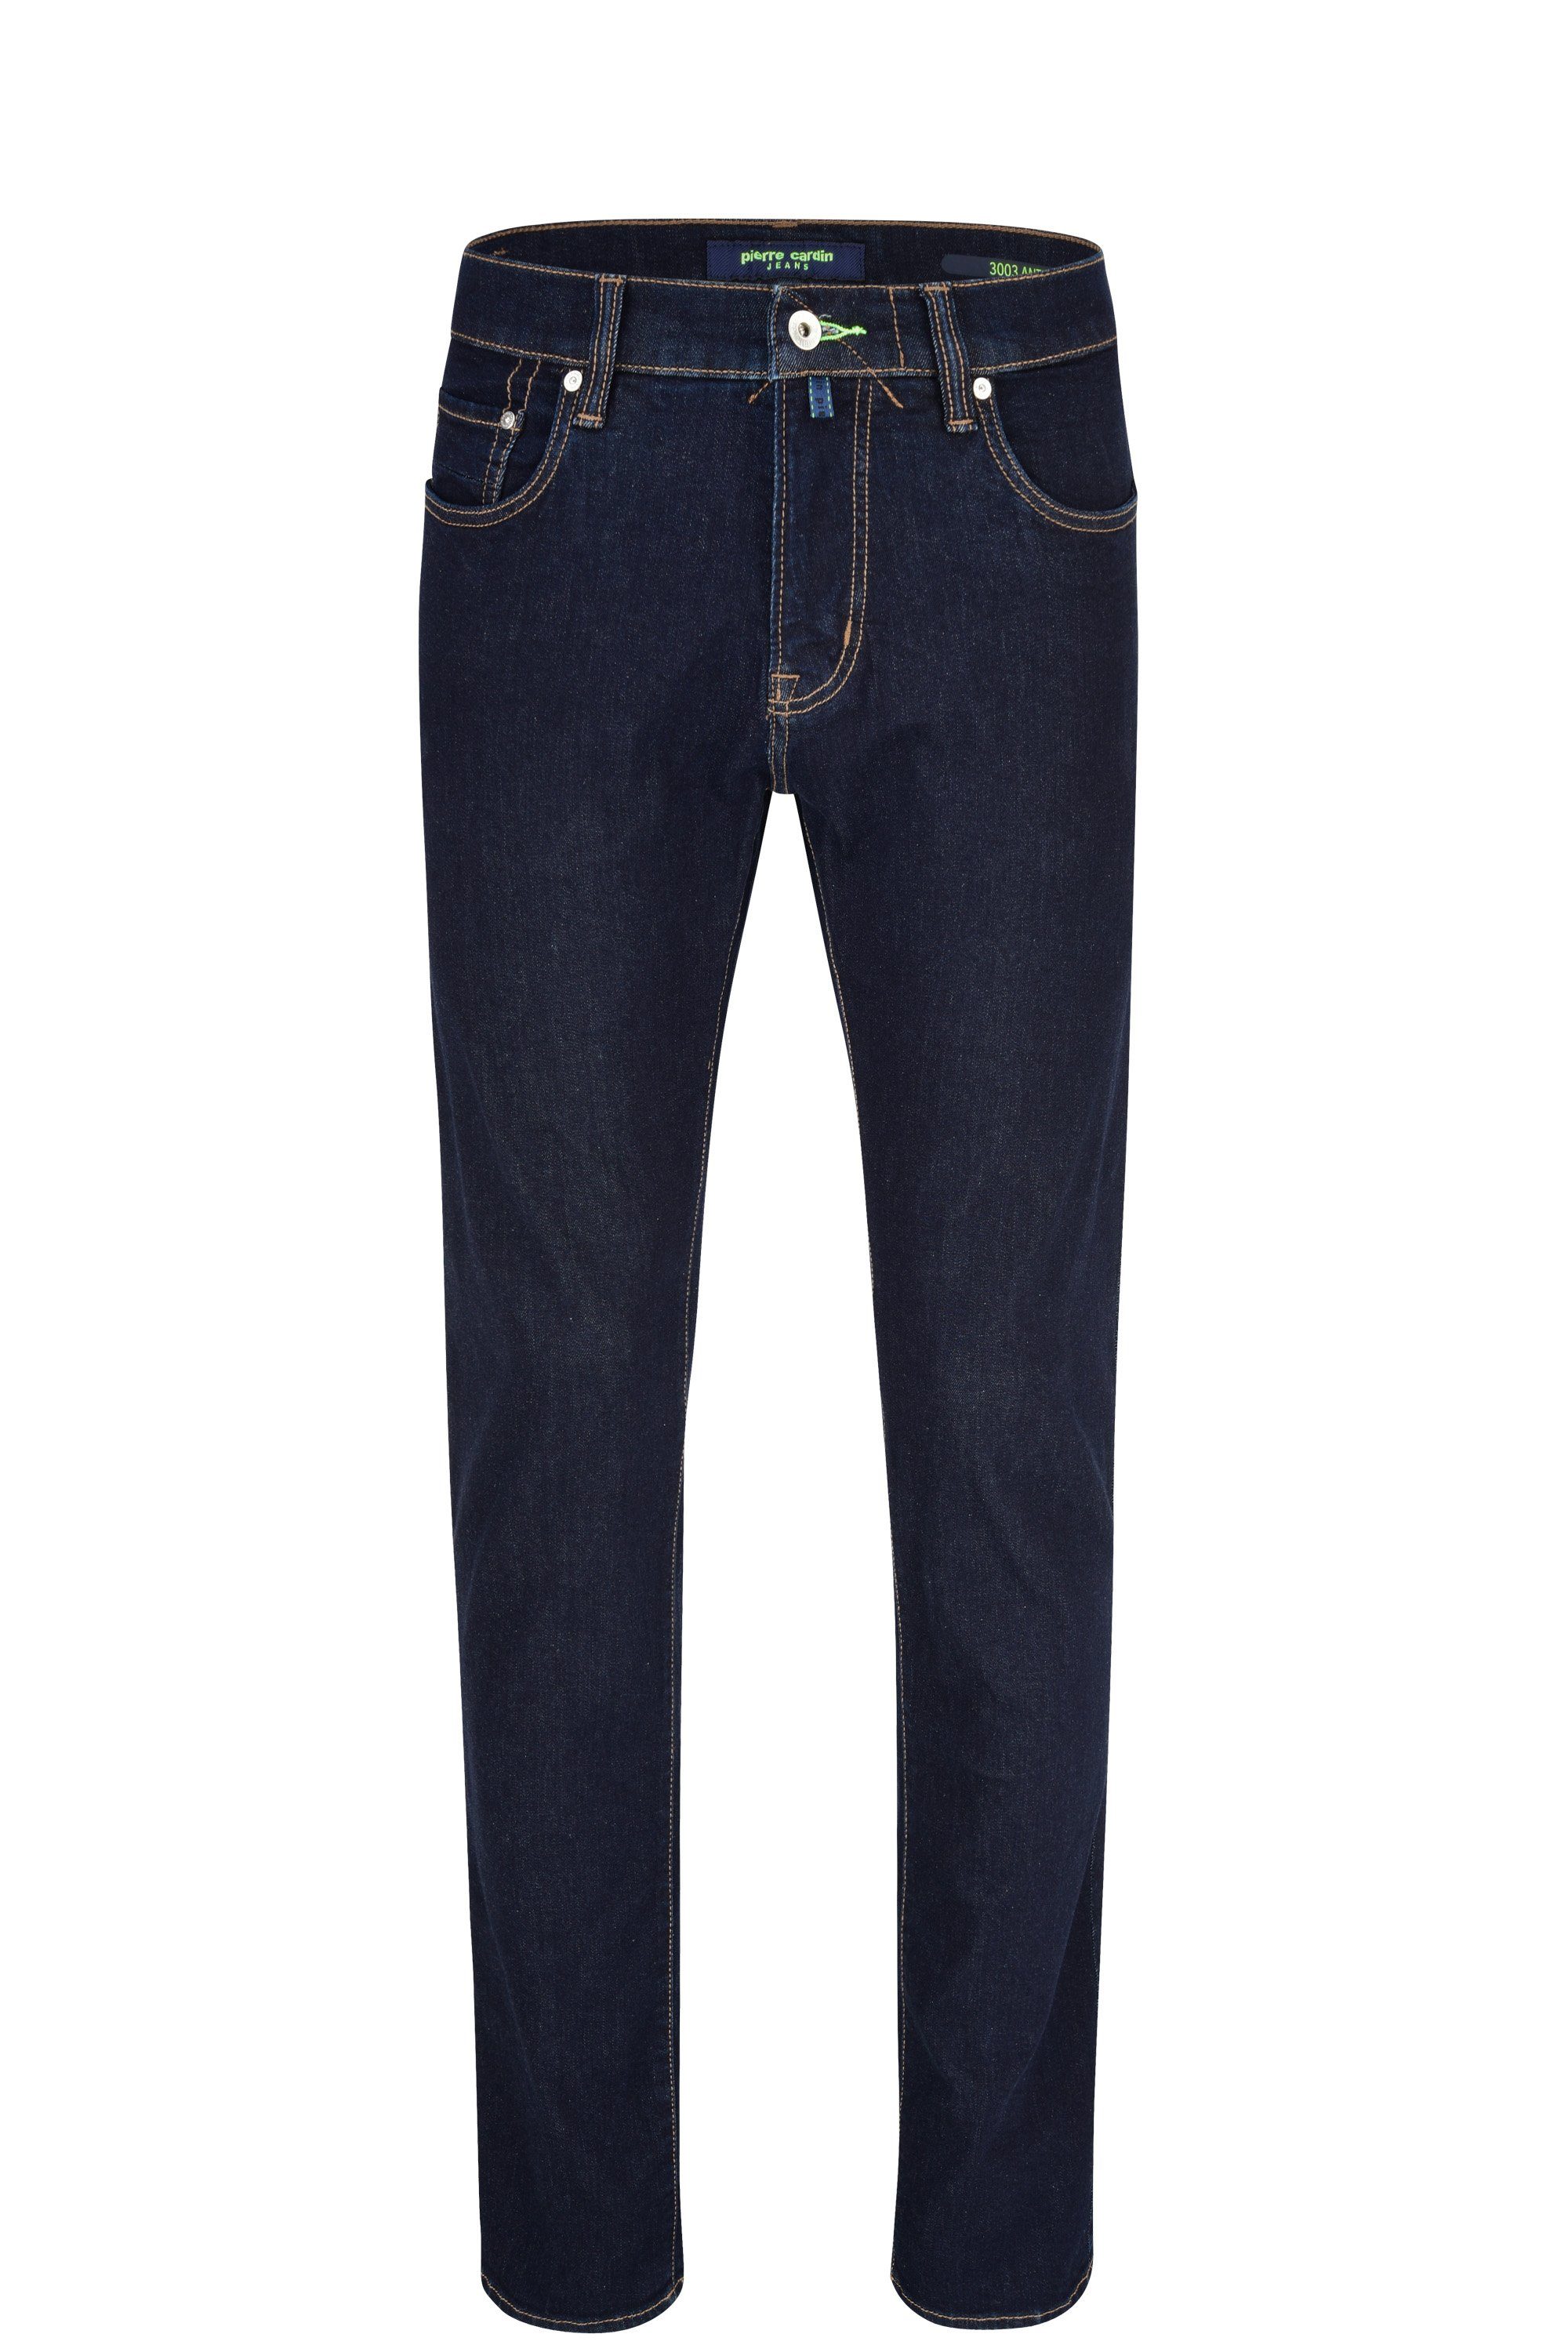 Pierre Cardin 5-Pocket-Jeans PIERRE CARDIN 6100.51 blue ANTIBES 3003 deep